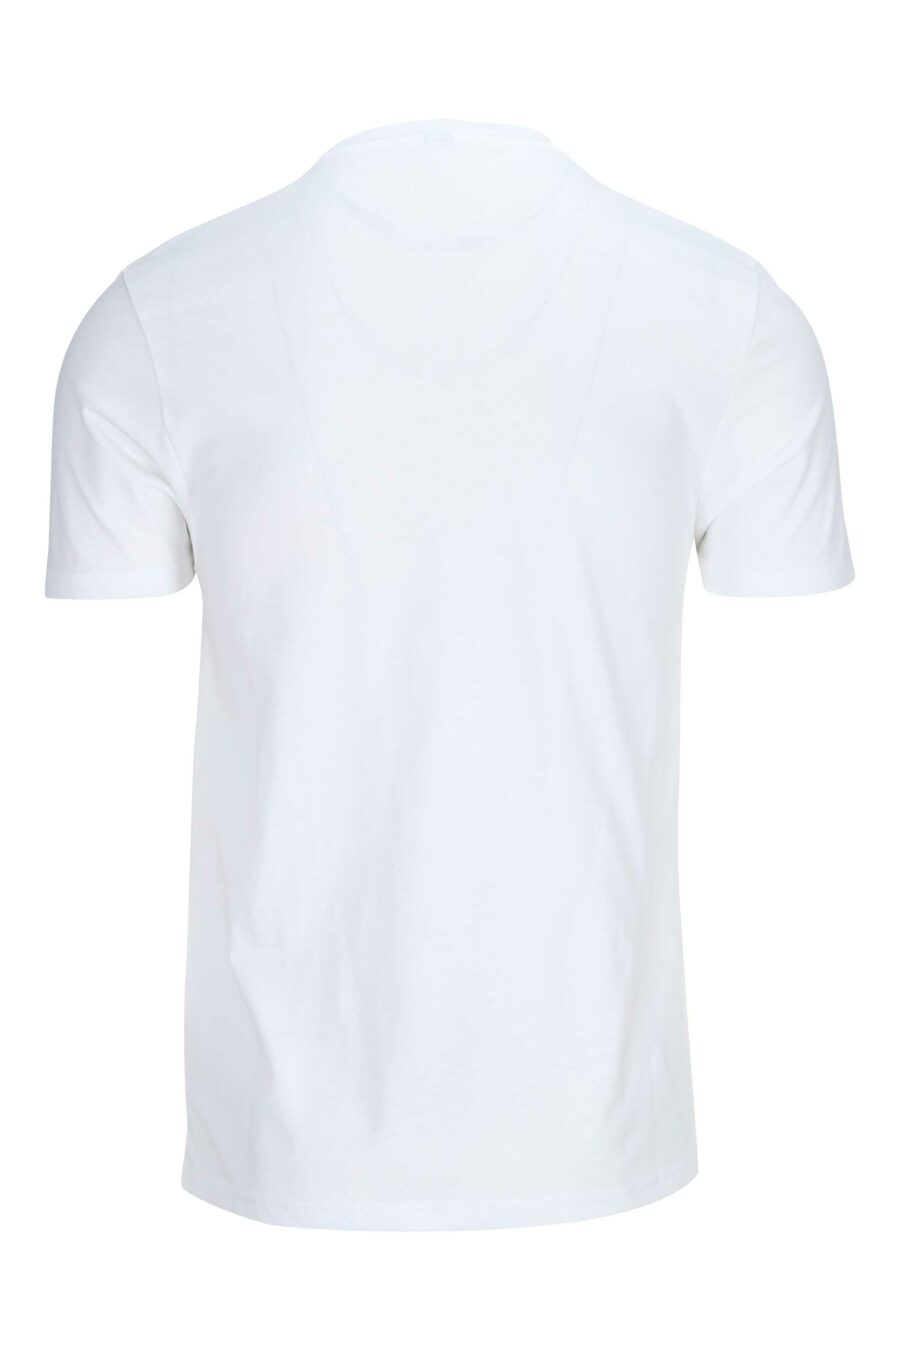 Weißes T-Shirt mit Logo auf den Schultern in Schleife - 667113024998 1